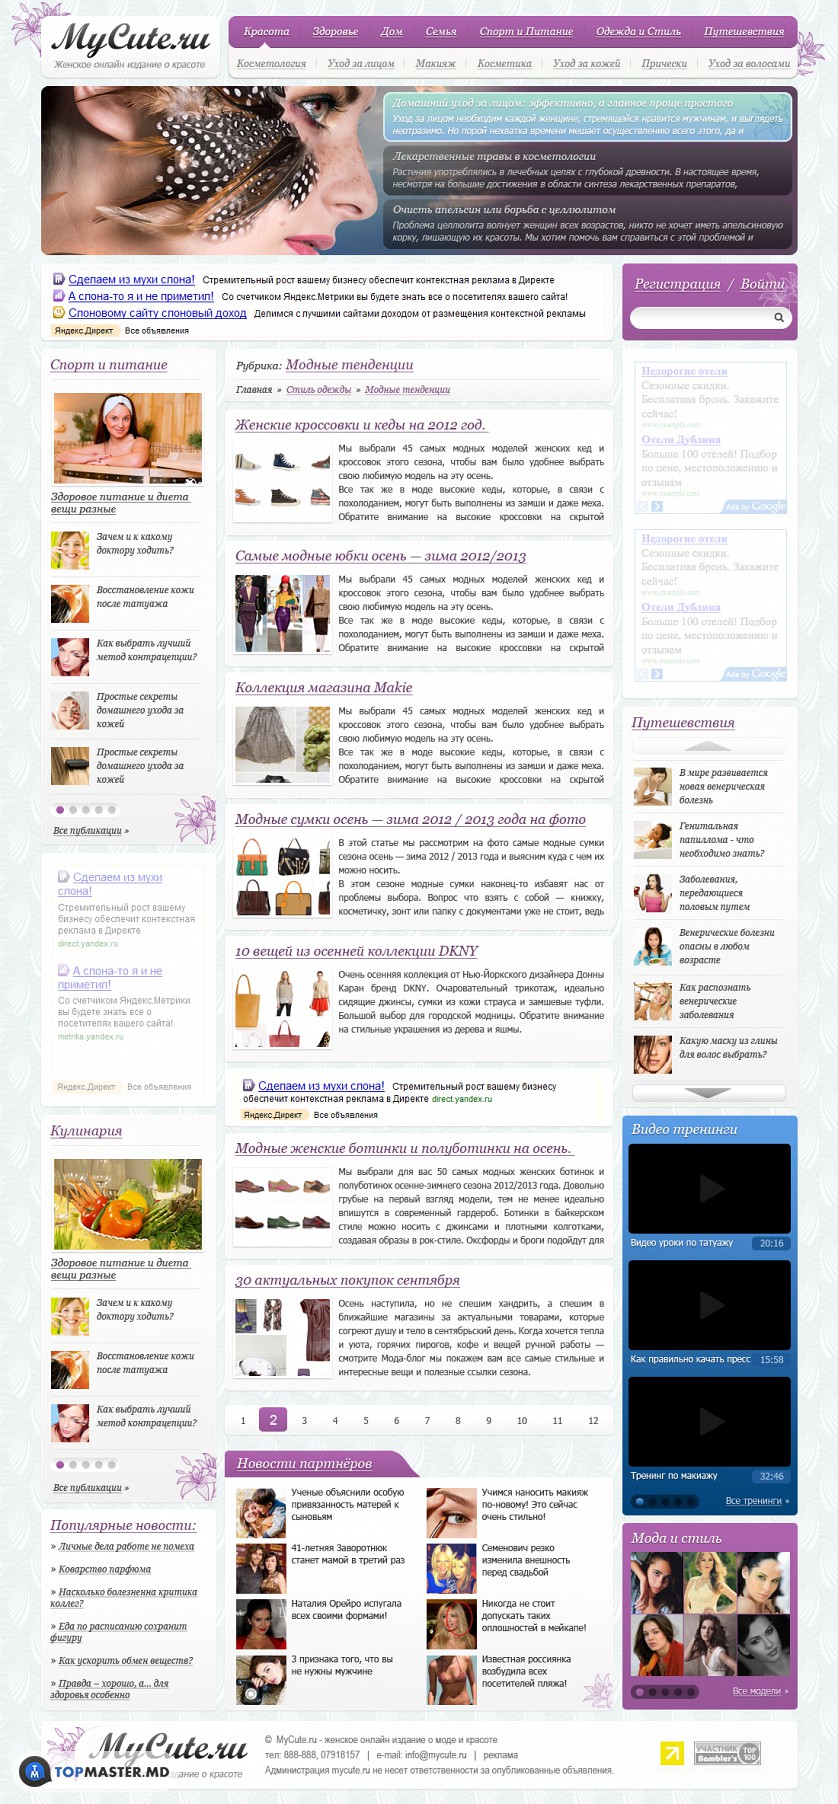 Женский онлайн журнал о моде и здоровье. изображение 3